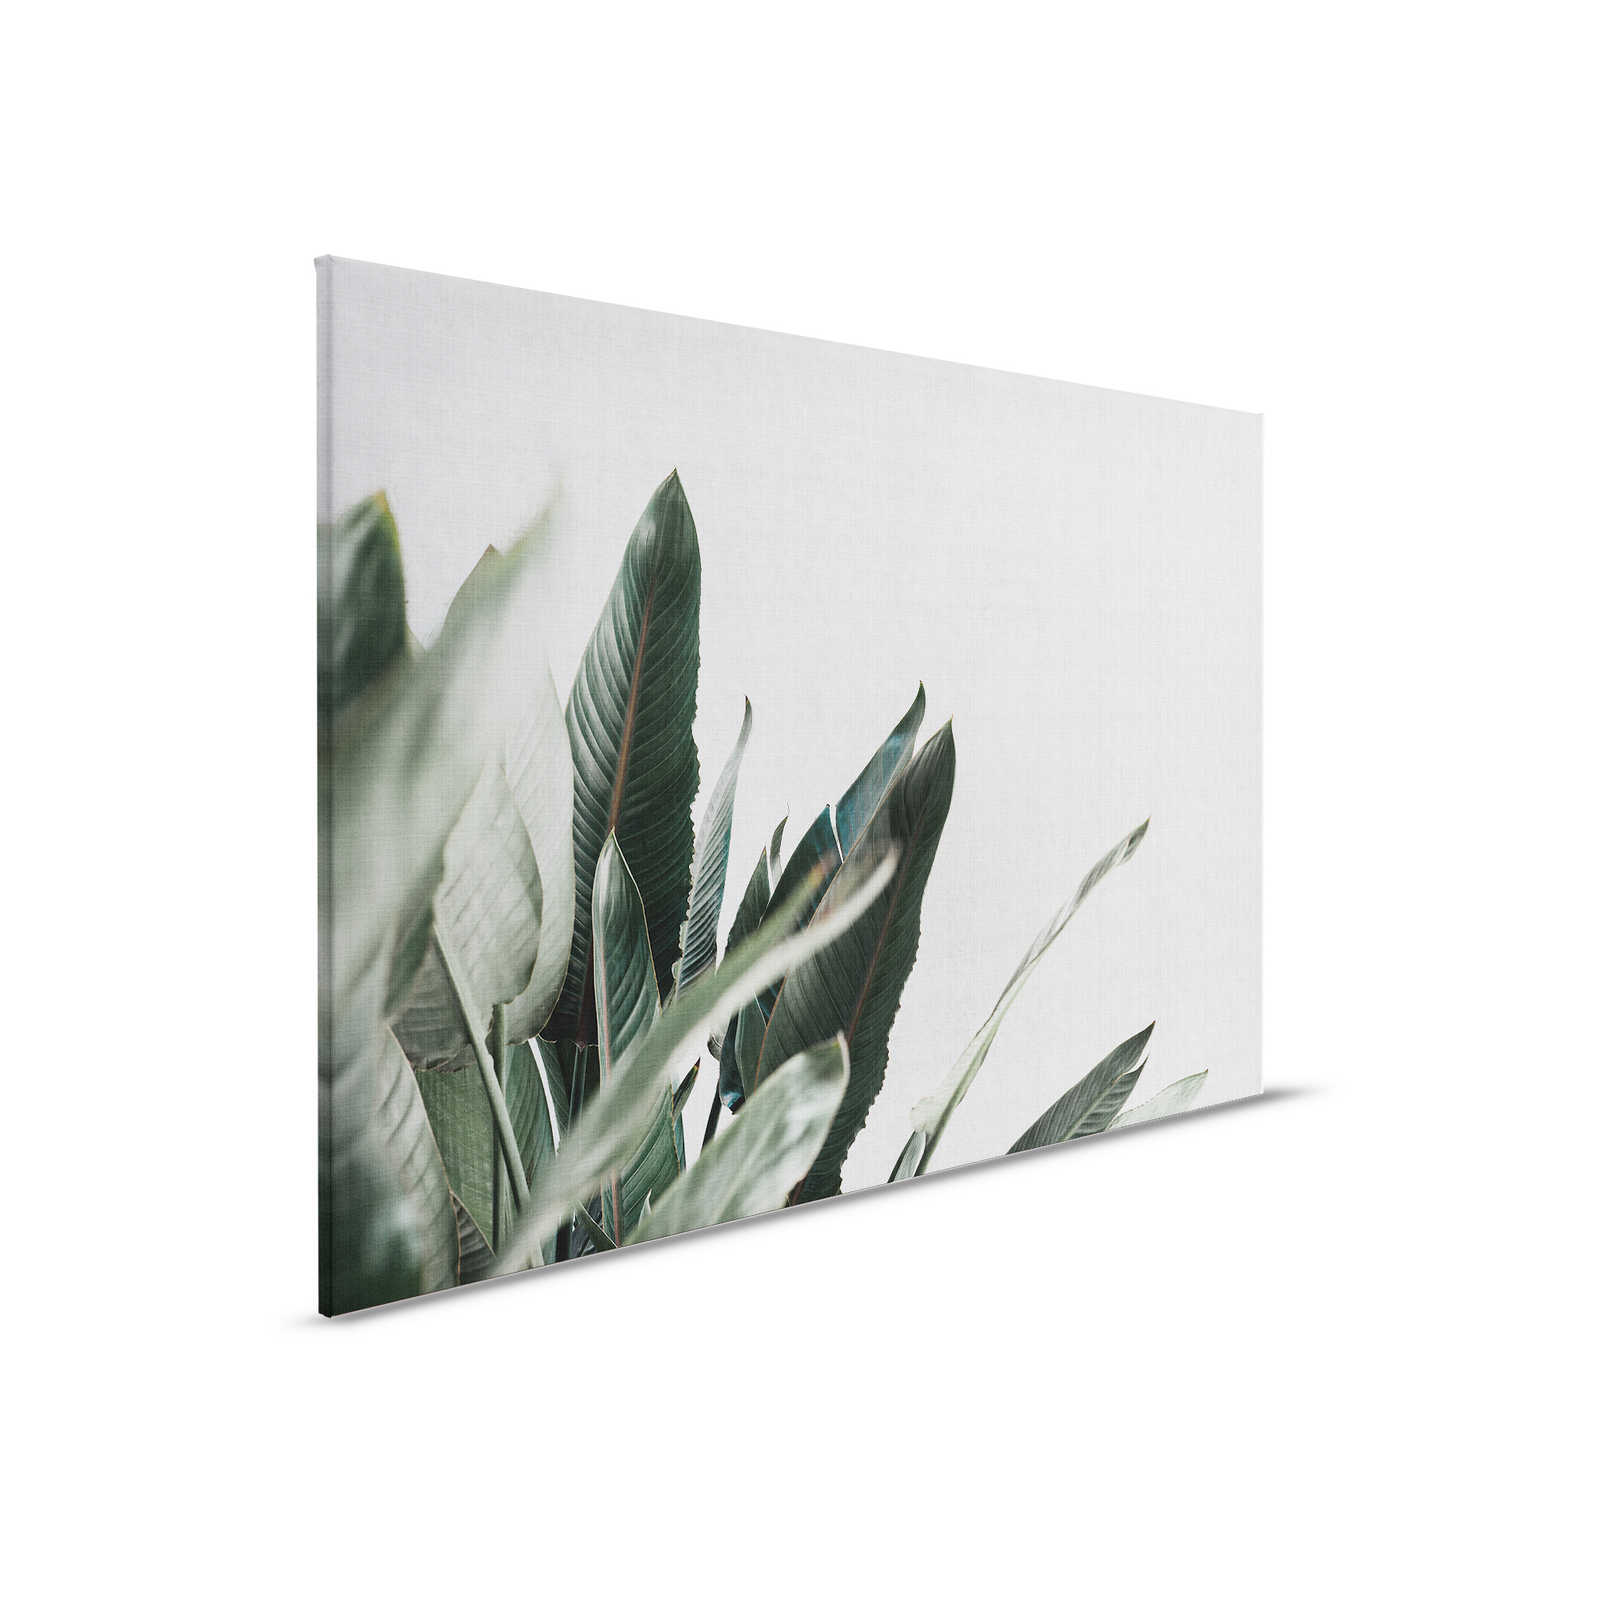 Urban jungle 1 - Leinwandbild mit Palmenblättern in naturleinen Optik – 0,90 m x 0,60 m
